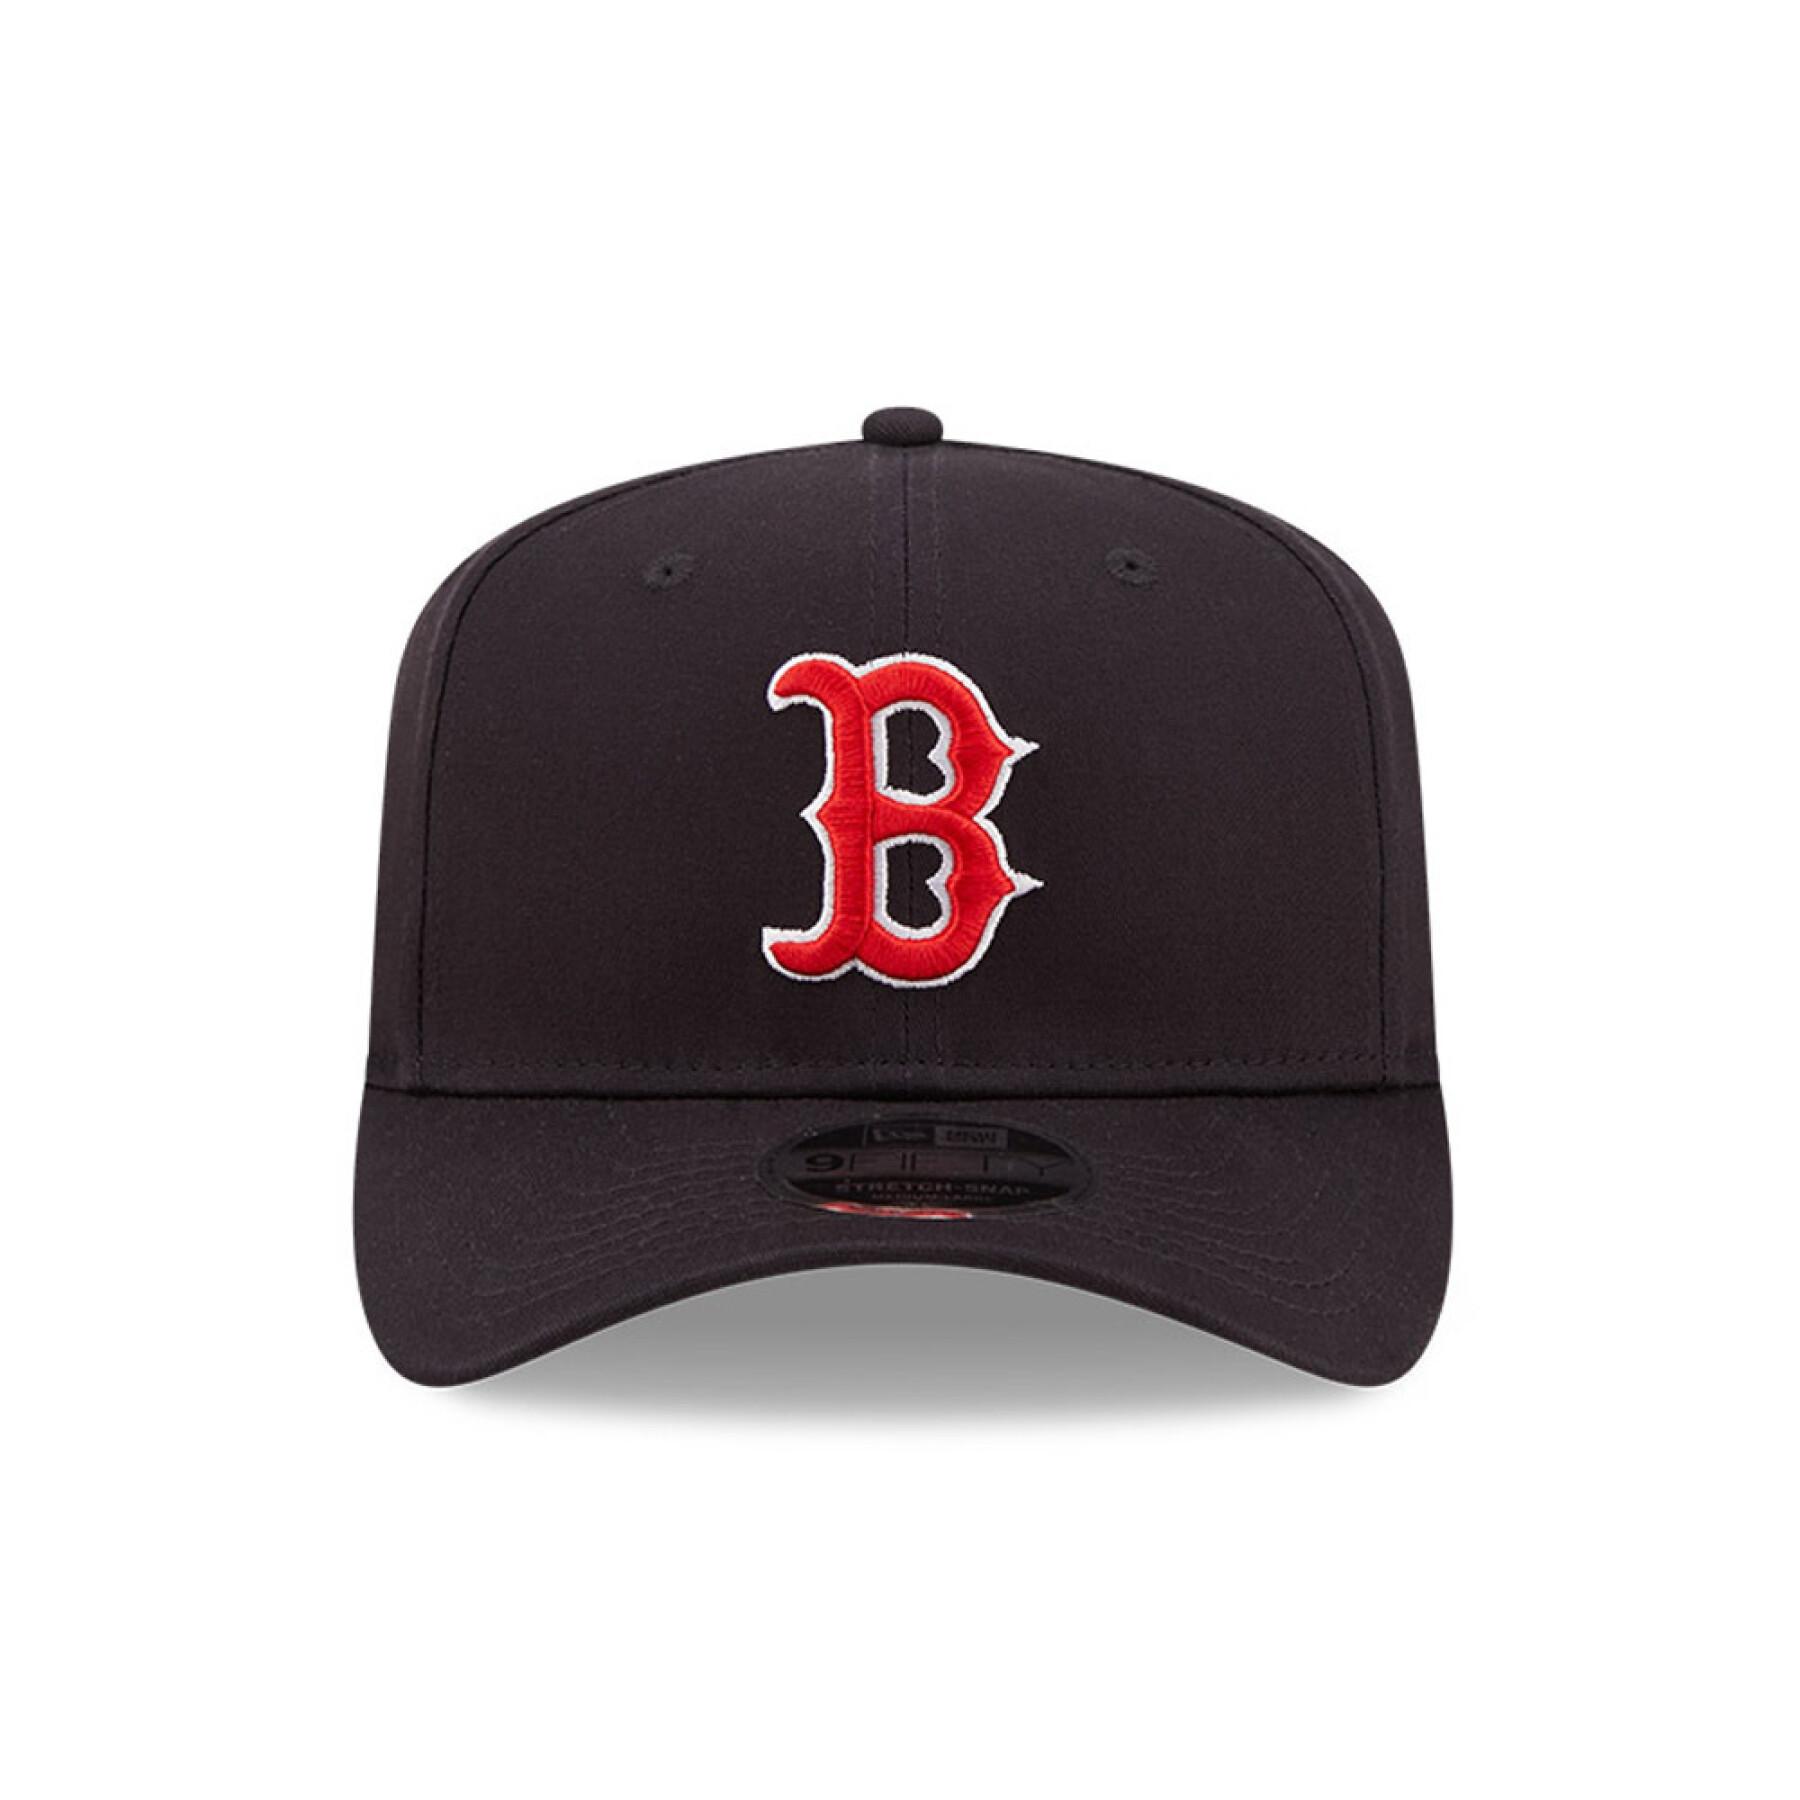 Gorra 9fifty New Era MLB Logo STSP Boston Red Sox